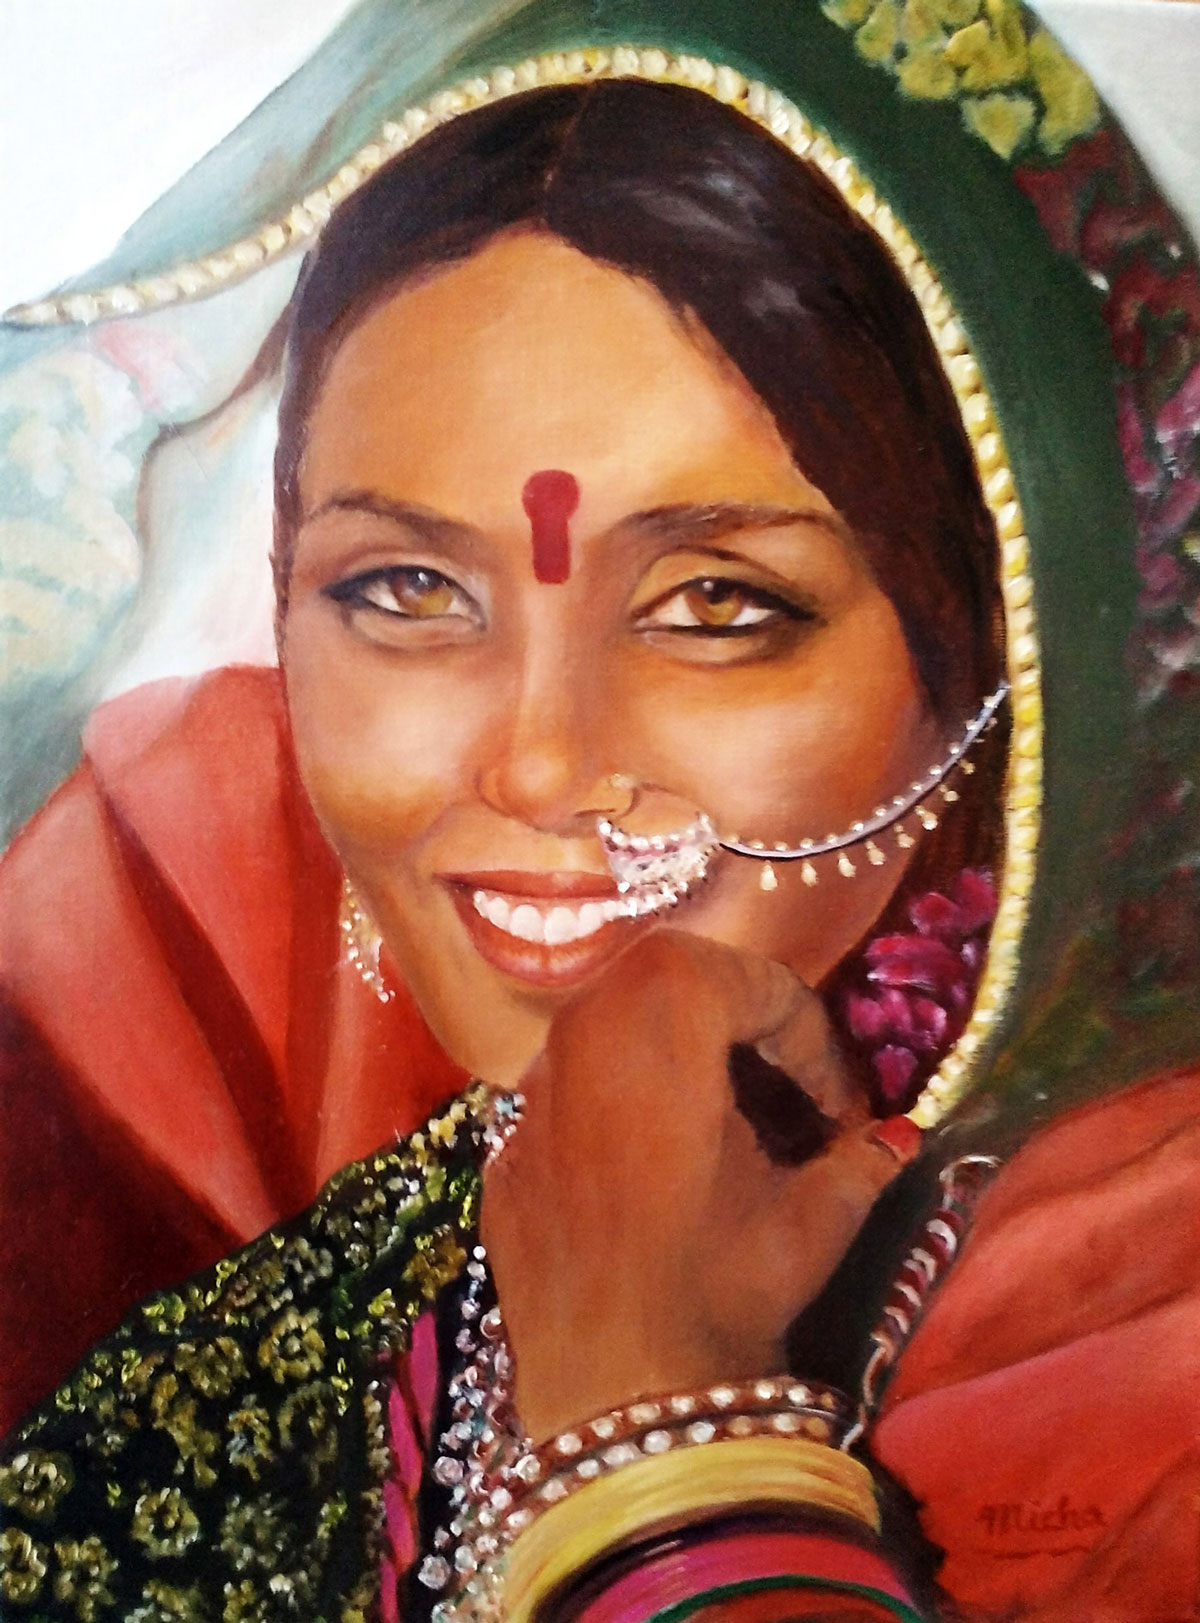 Indienne - Peinture de Micha et Mp3